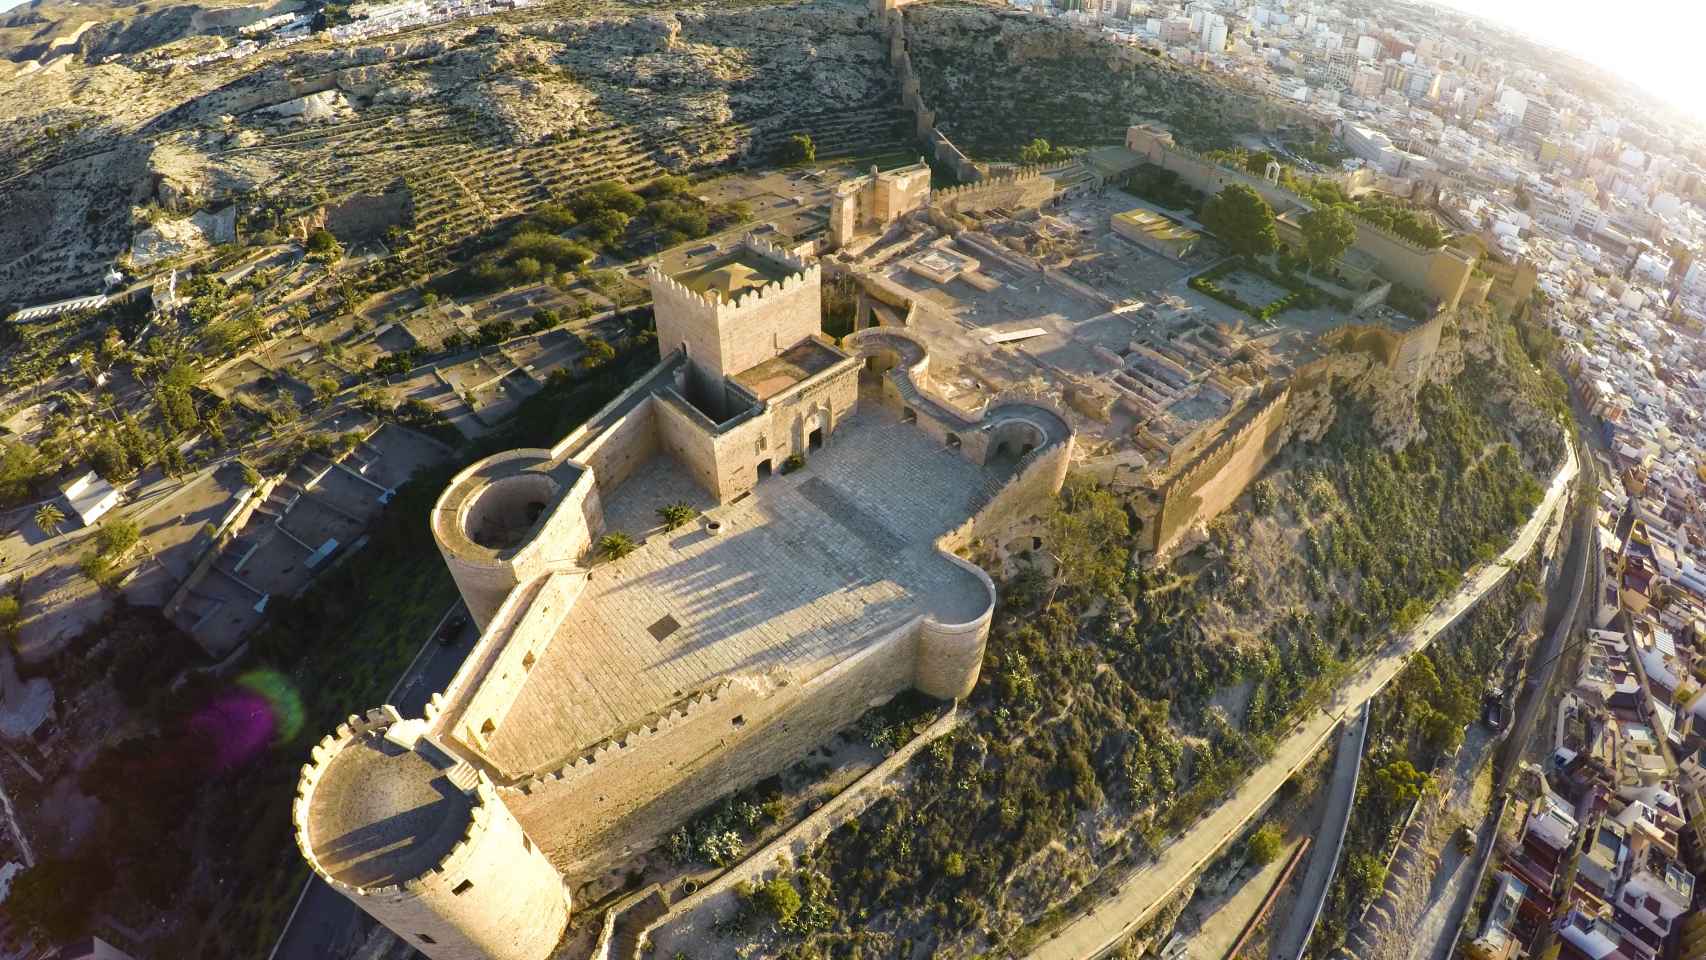 El impresionante castillo de Alcazaba, en la provincia de Almería.